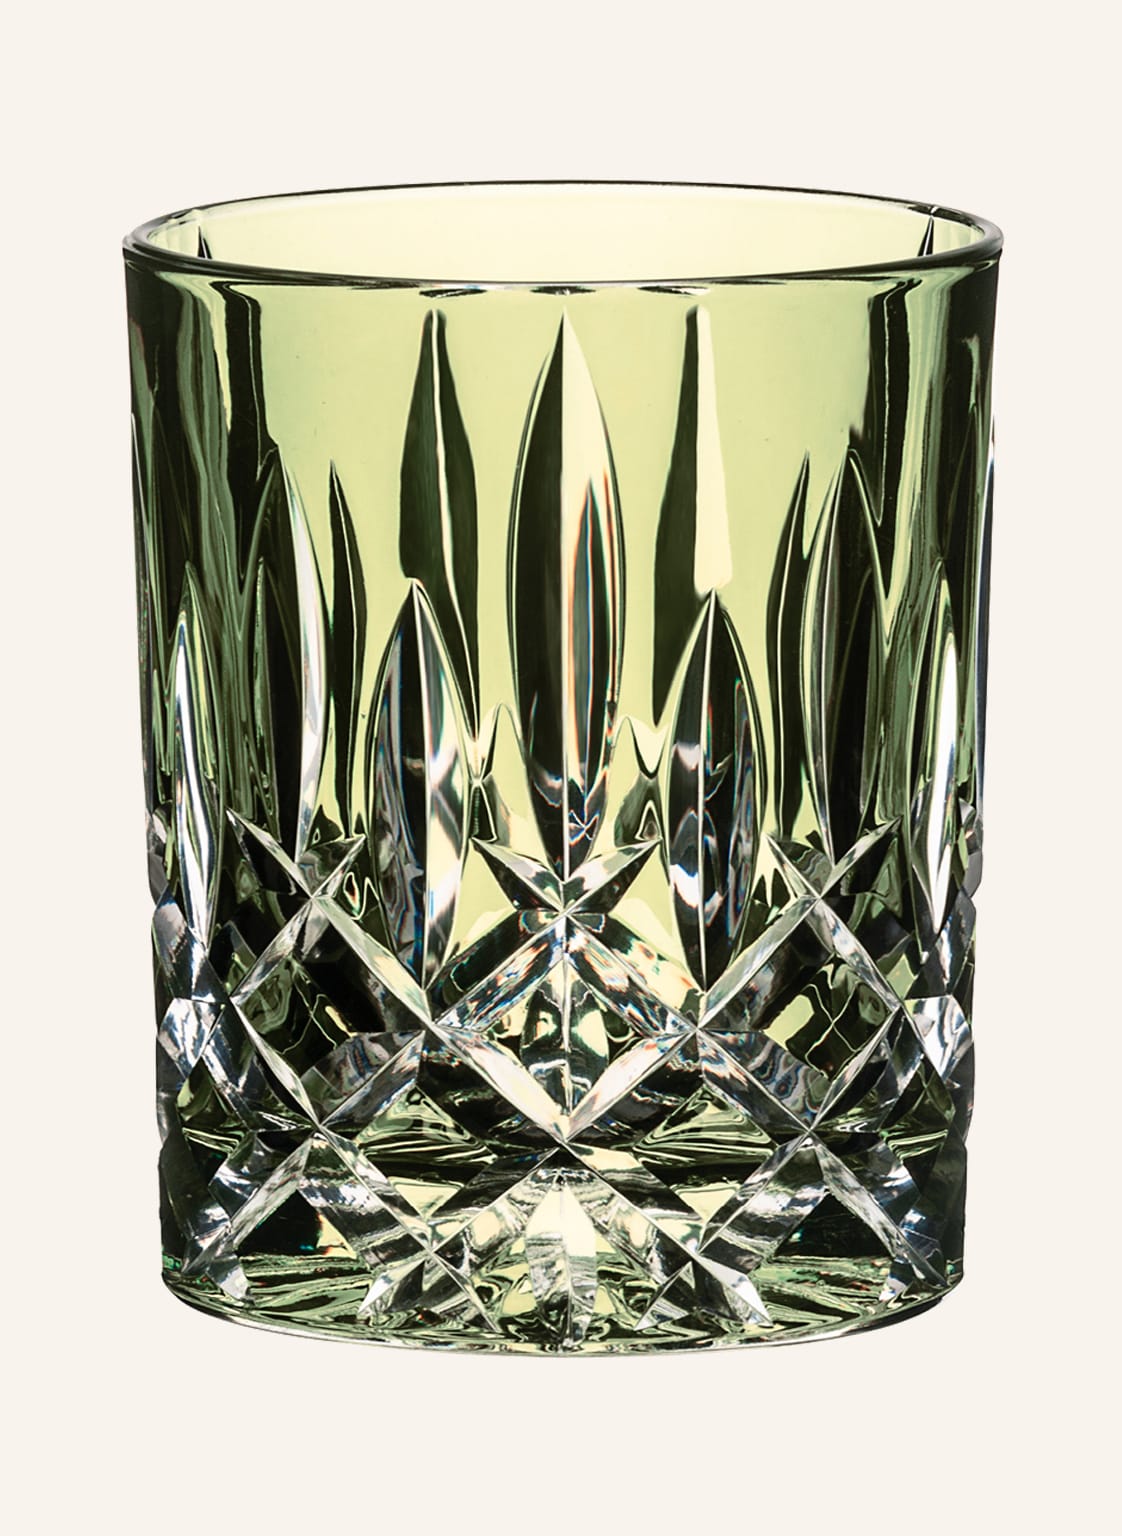 Riedel Whiskyglas Laudon Grün gruen von Riedel